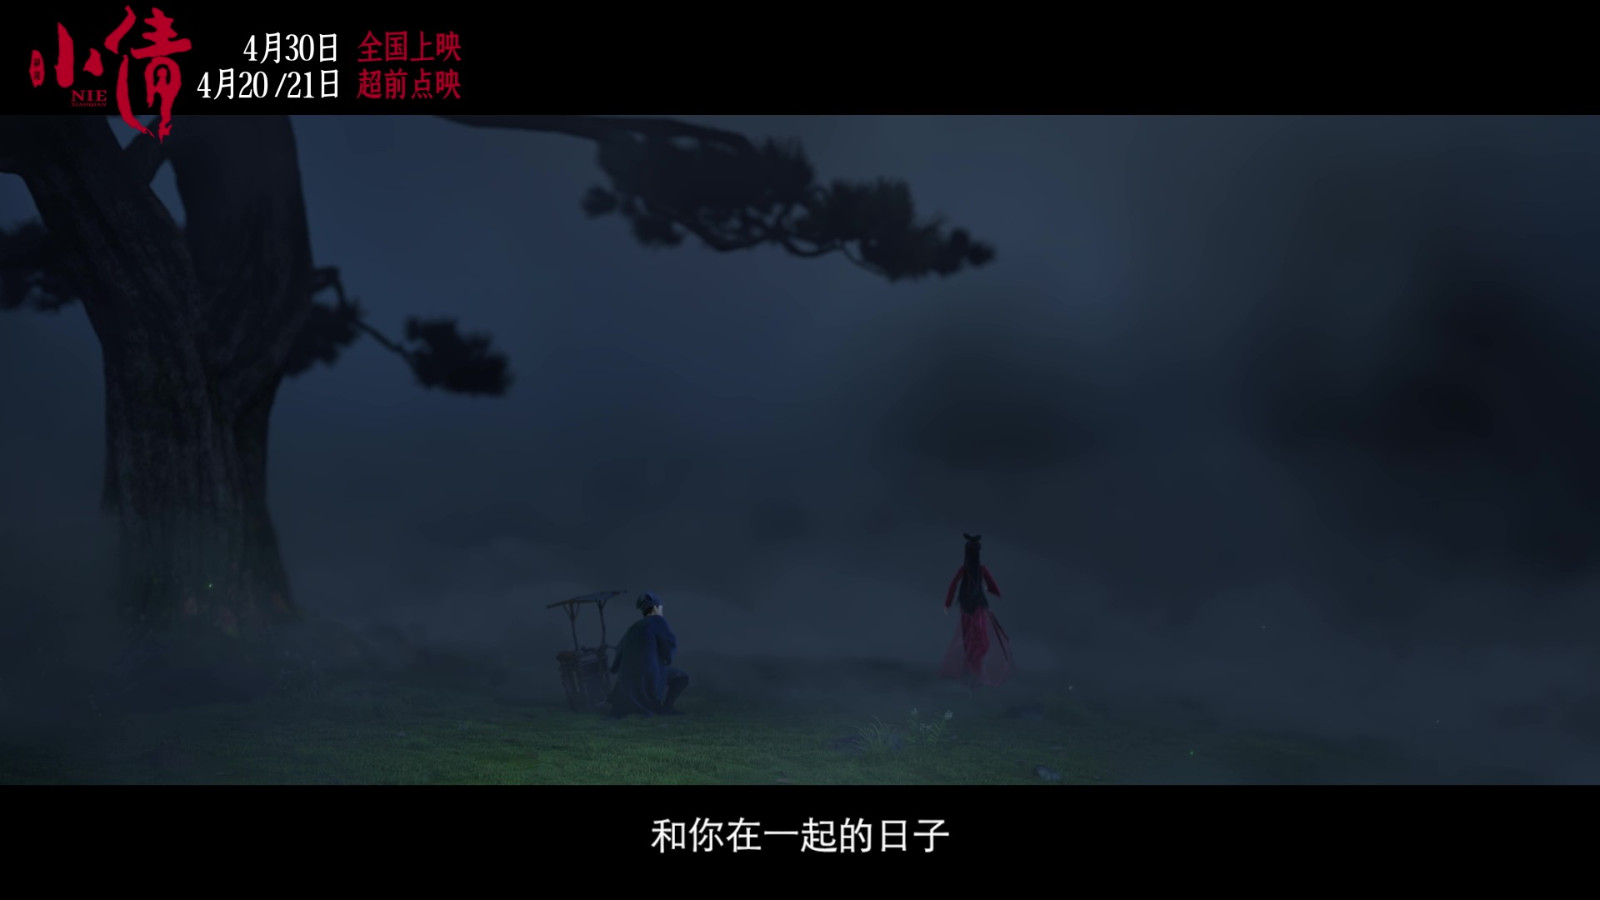 电影《小倩》片尾曲MV “只要今生”双人海报  第11张